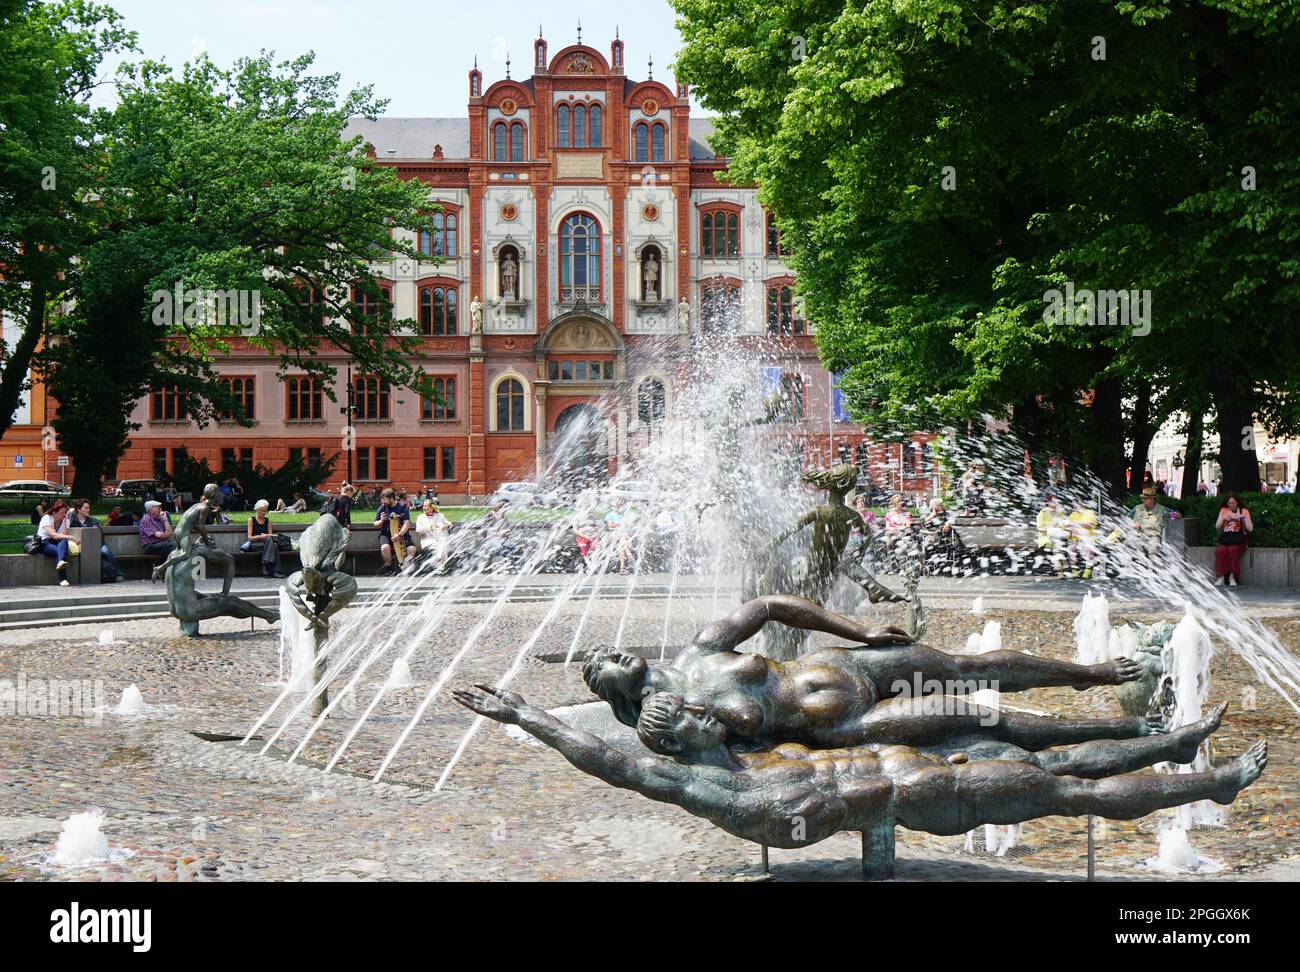 Rostock, Allemagne - 30 mai 2016 : place de l'université avec fontaine de vitalité et bâtiment universitaire. L'Université de Rostock, fondée en 1419, est Banque D'Images